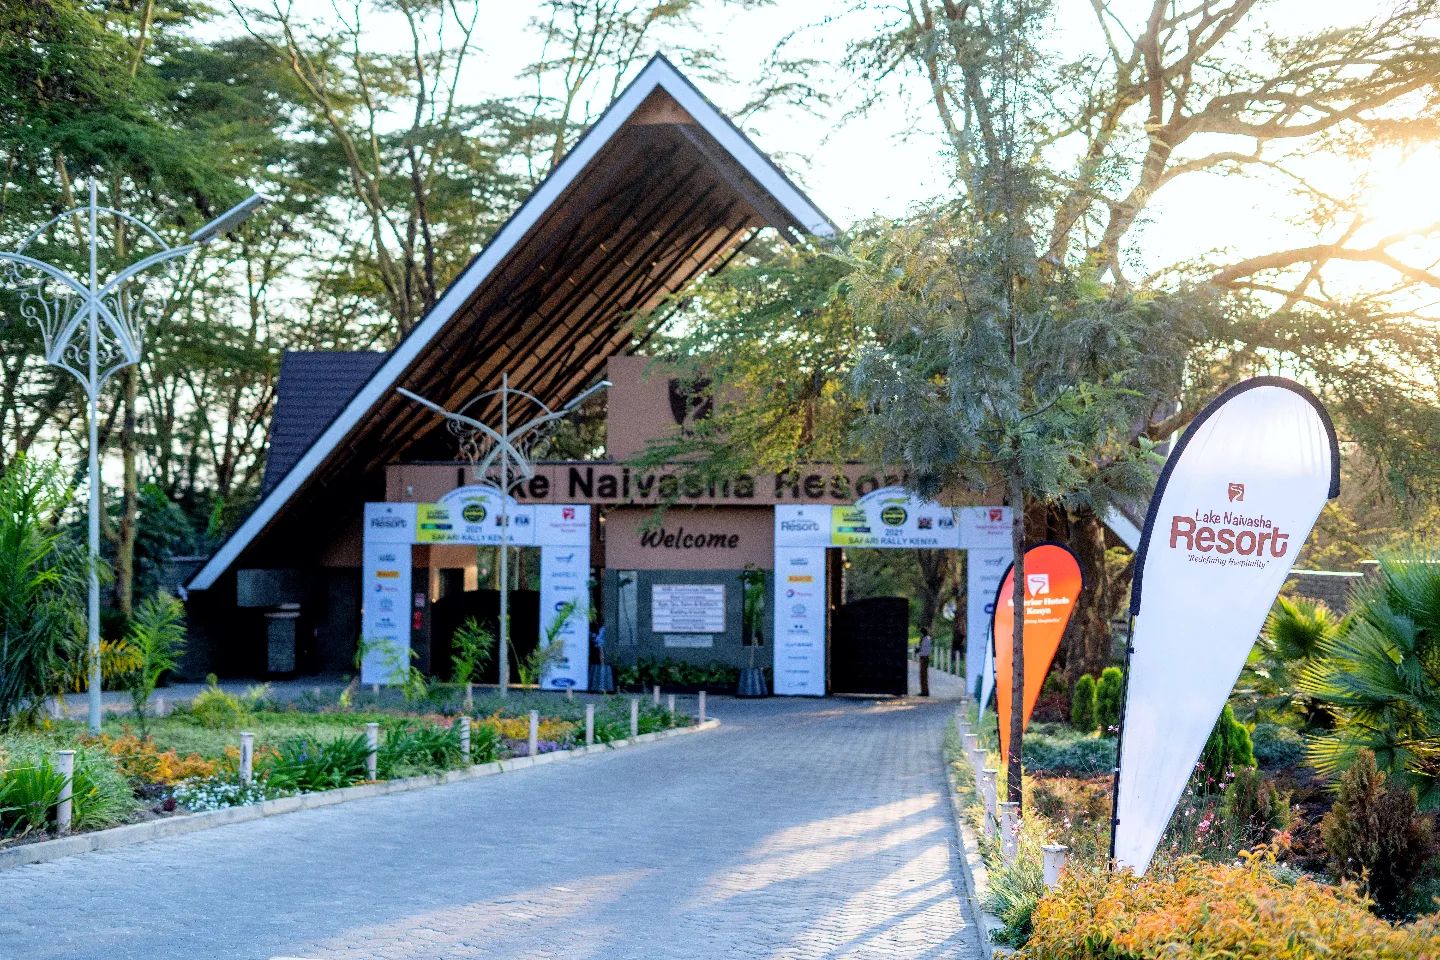 Lake Naivasha Resort